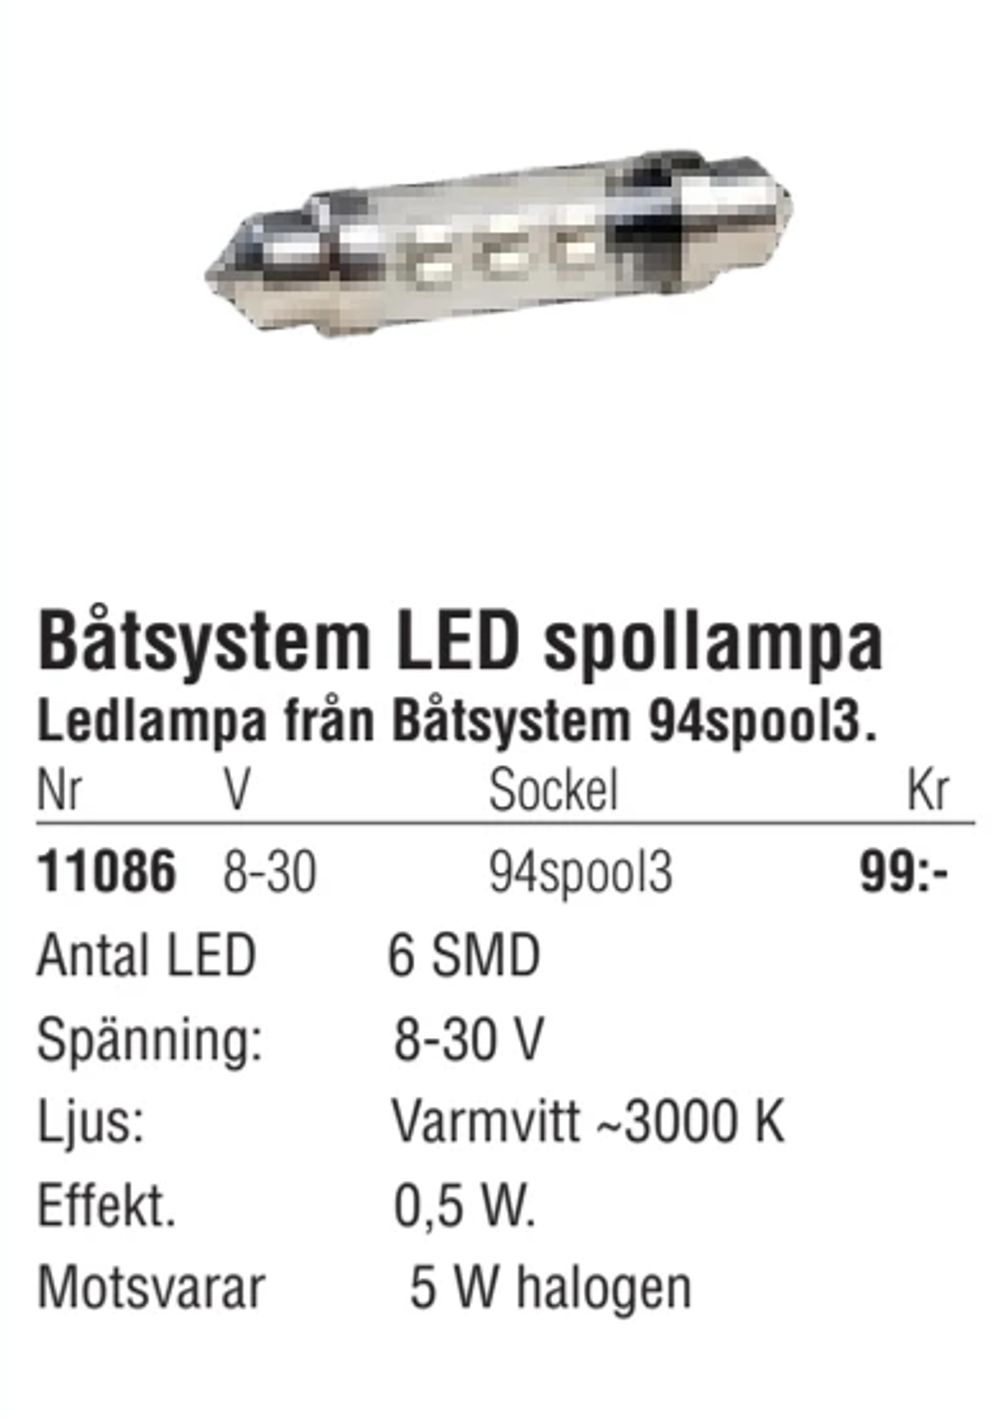 Erbjudanden på Båtsystem LED spollampa från Erlandsons Brygga för 99 kr